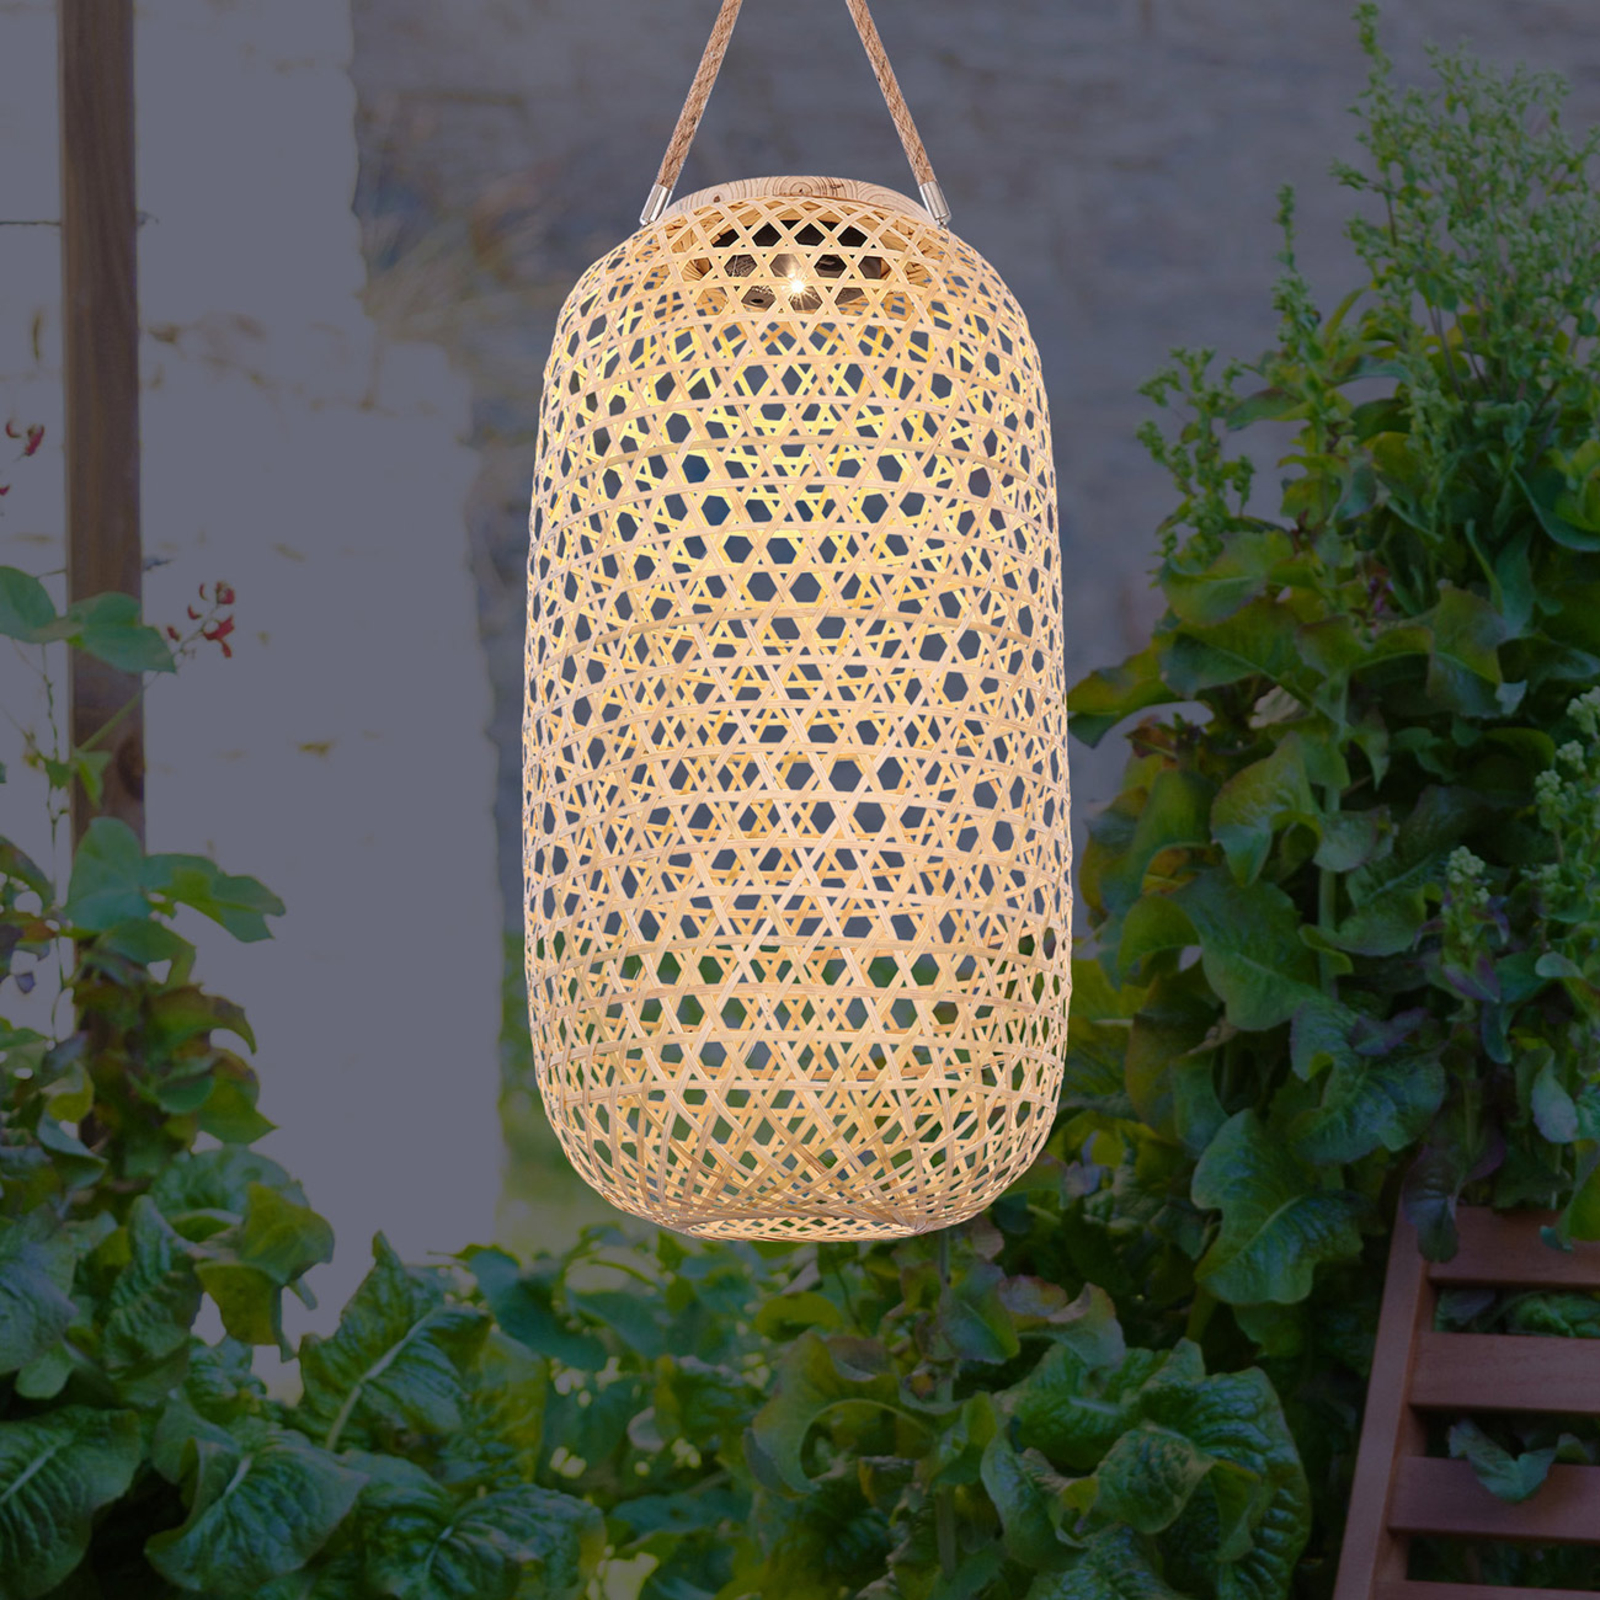 nauwkeurig Onbevredigend Lief LED solarlamp 33671 lantaarn van bamboe vlechtwerk | Lampen24.nl